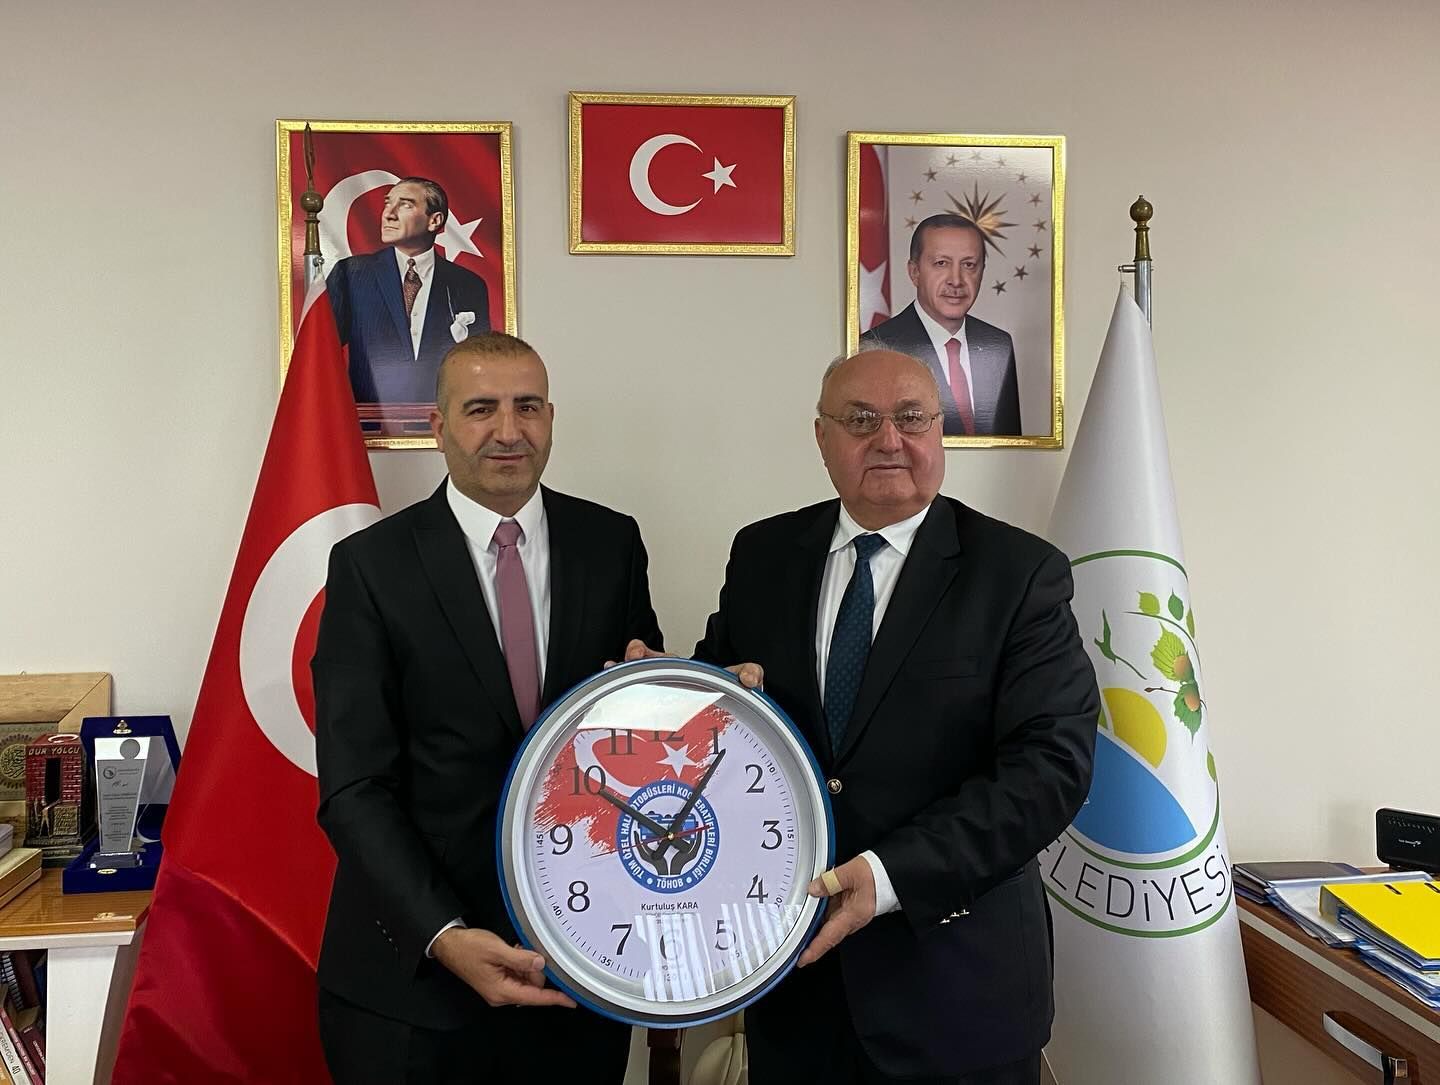 TÖHOB Genel Başkanı Kurtuluş KARA, Ankara Şöförler Odası Başkanı ve Gölyaka Şöförler Odası Başkanı'nın belediyemizi ziyaret ettiler.